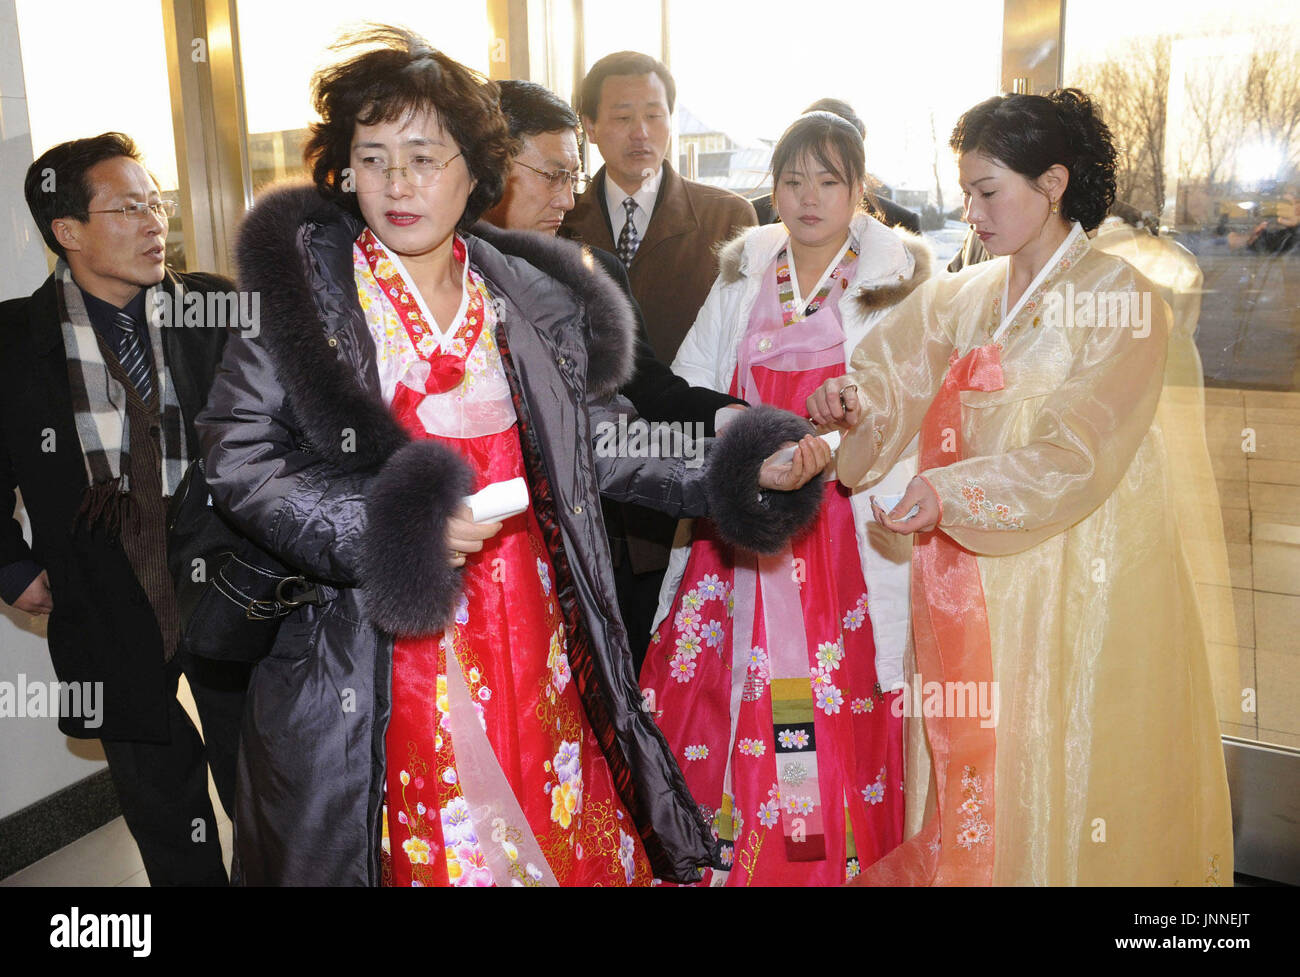 PYONGYANG, Corée du Nord - Les femmes en costume traditionnel coréen arriver au Grand Théâtre de Pyongyang est la capitale nord-coréenne le 26 février pour un concert de l'Orchestre philharmonique de New York. (Kyodo) Banque D'Images